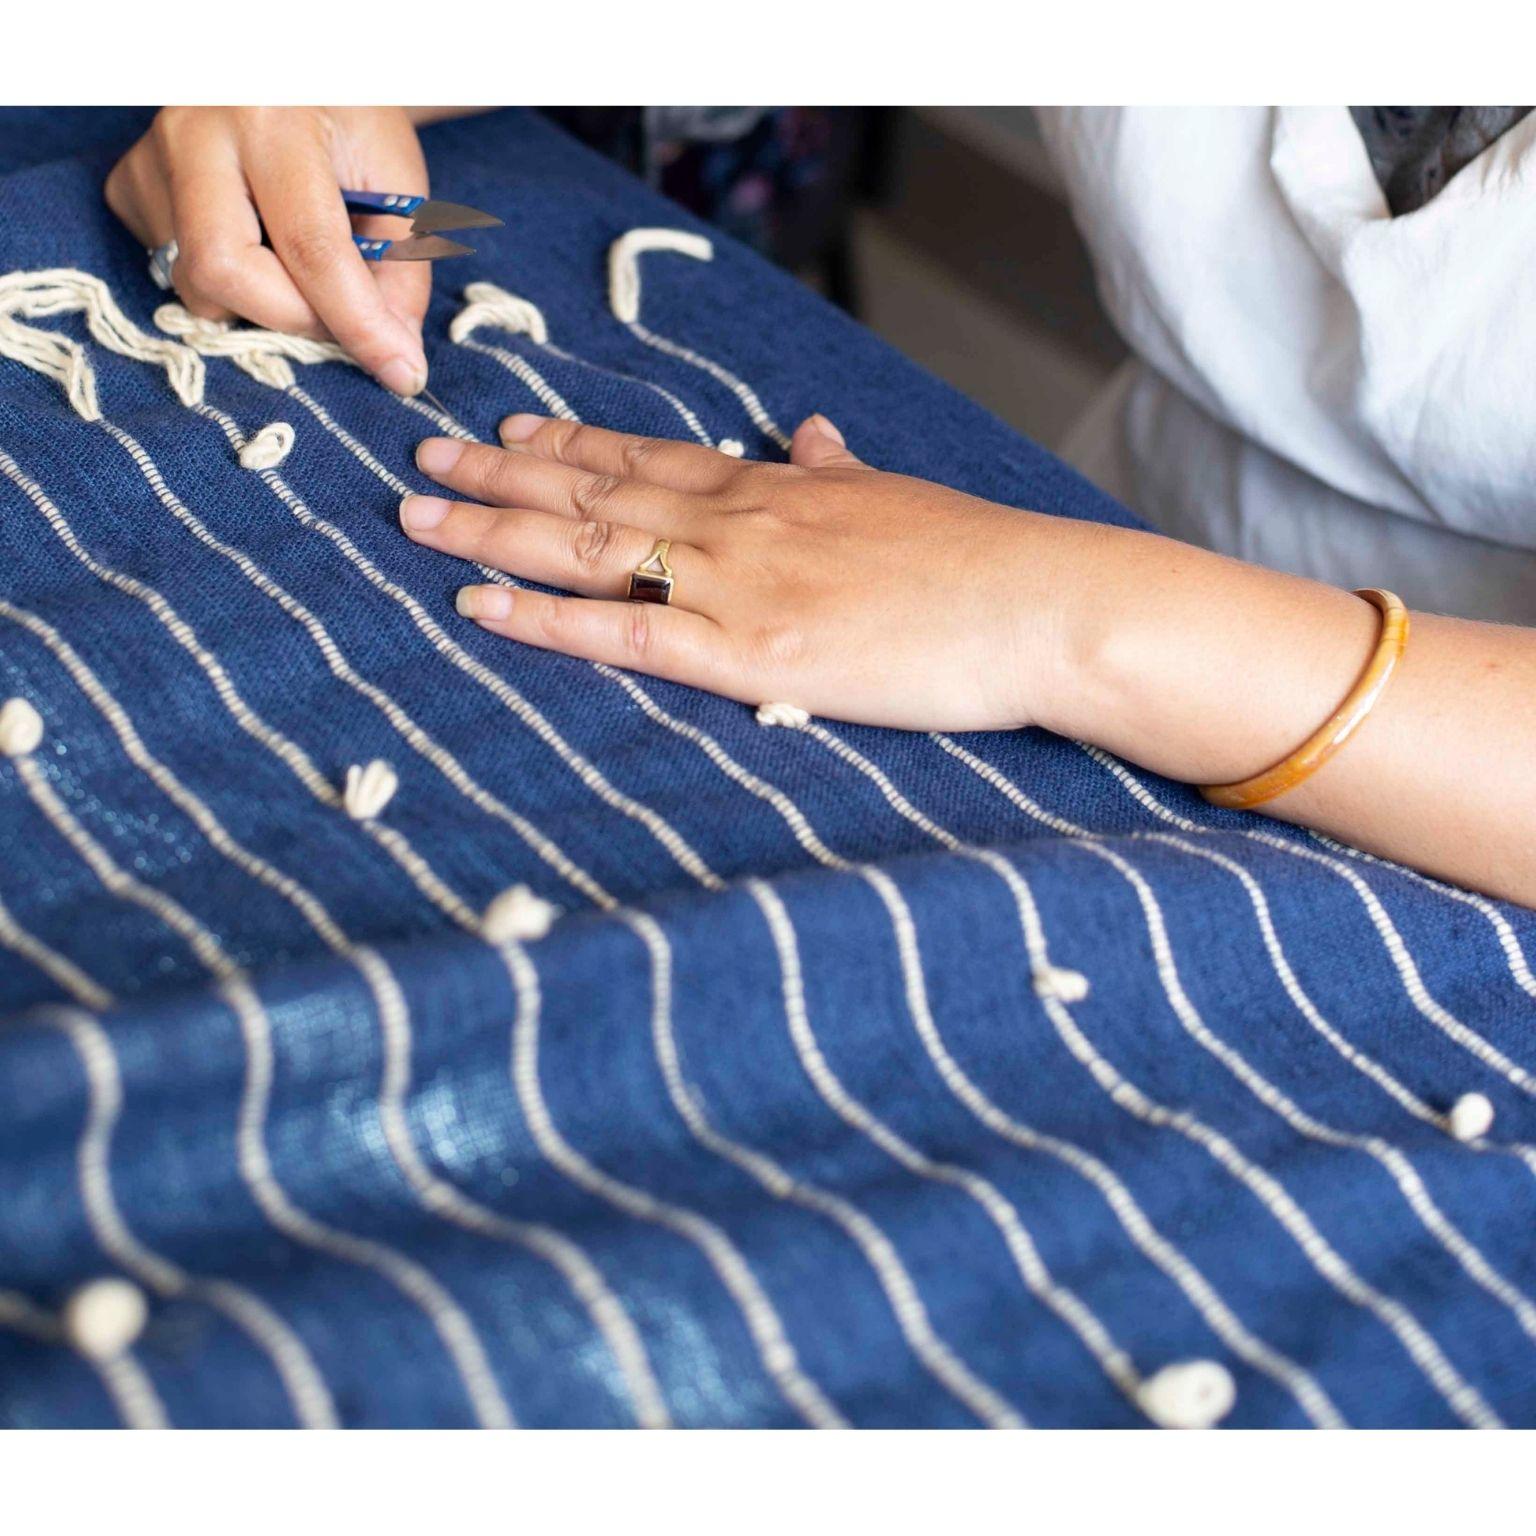 Rosewood Indigo Handloom Queen Size Bedpsread / Coverlet in Stripes Design 9